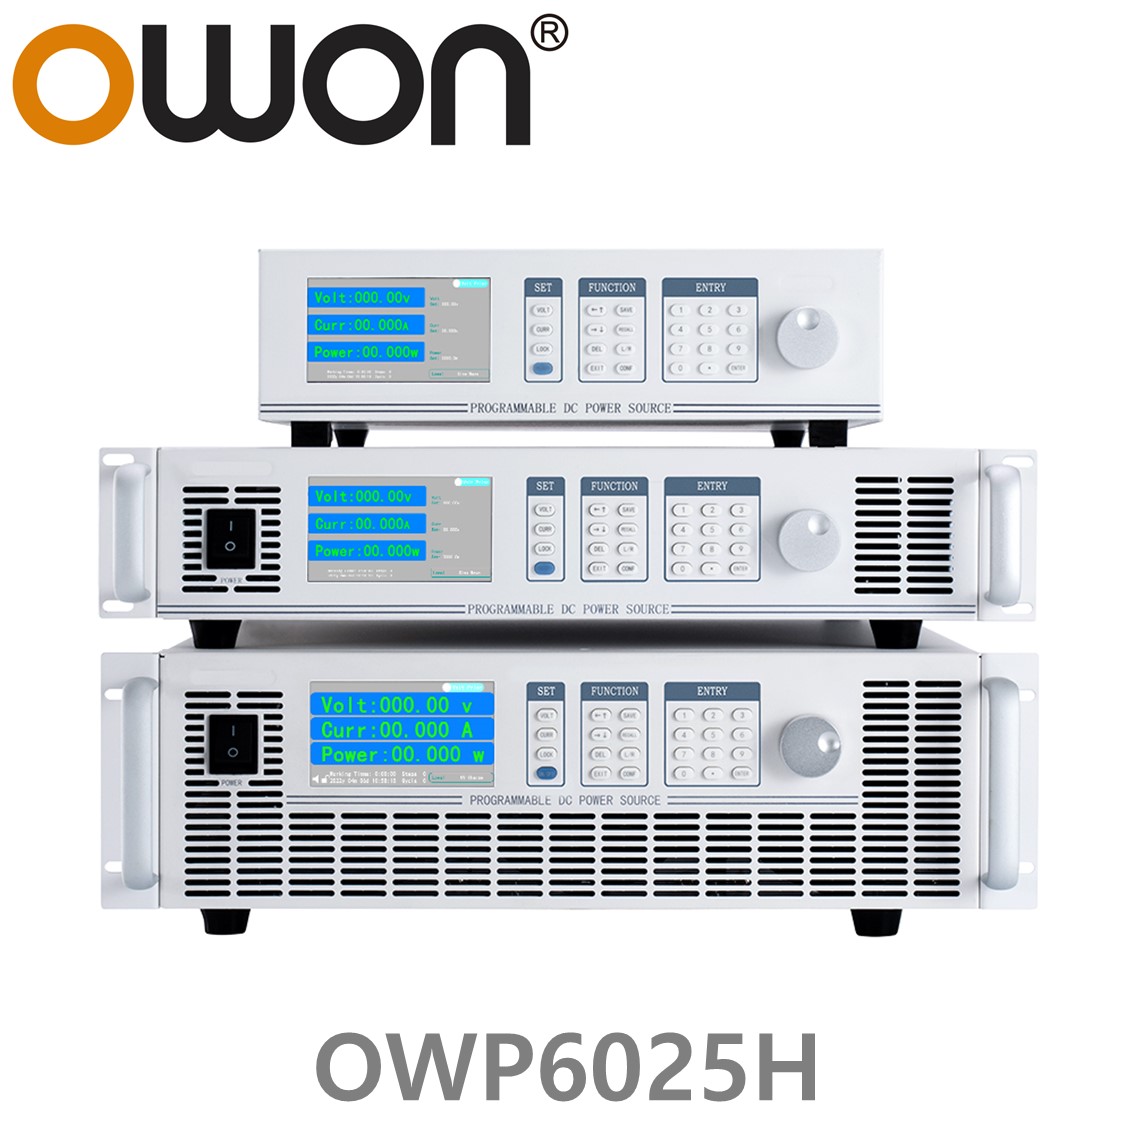 [ OWON ] OWP6025H 고전력 DC파워서플라이, 0-250.00V / 0-40.000A / 6000.0W DC전원공급장치